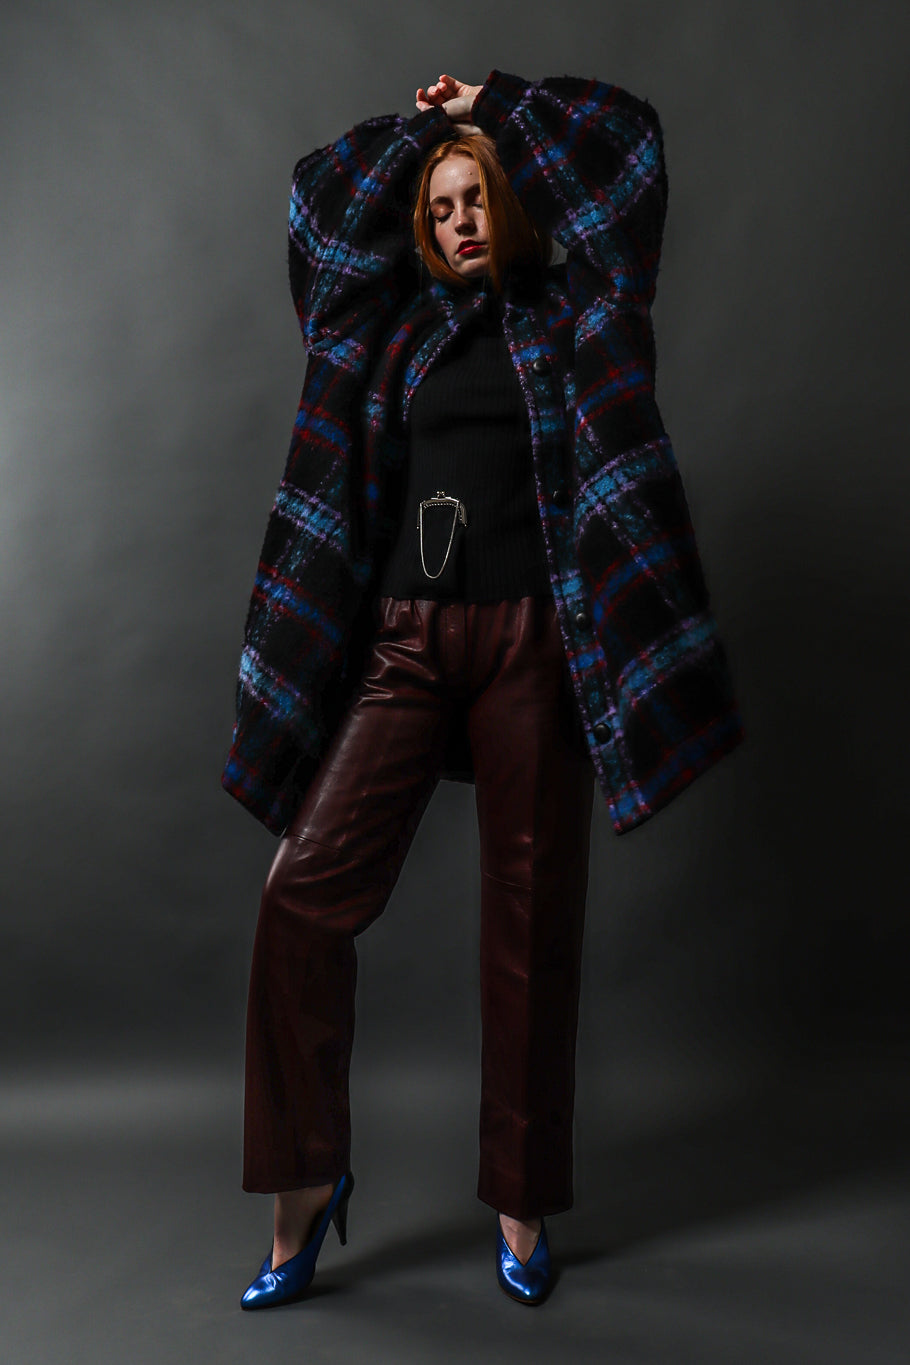 Emily O'Dette in Saint Laurent Jacket & Leather Pant @ Recess LA